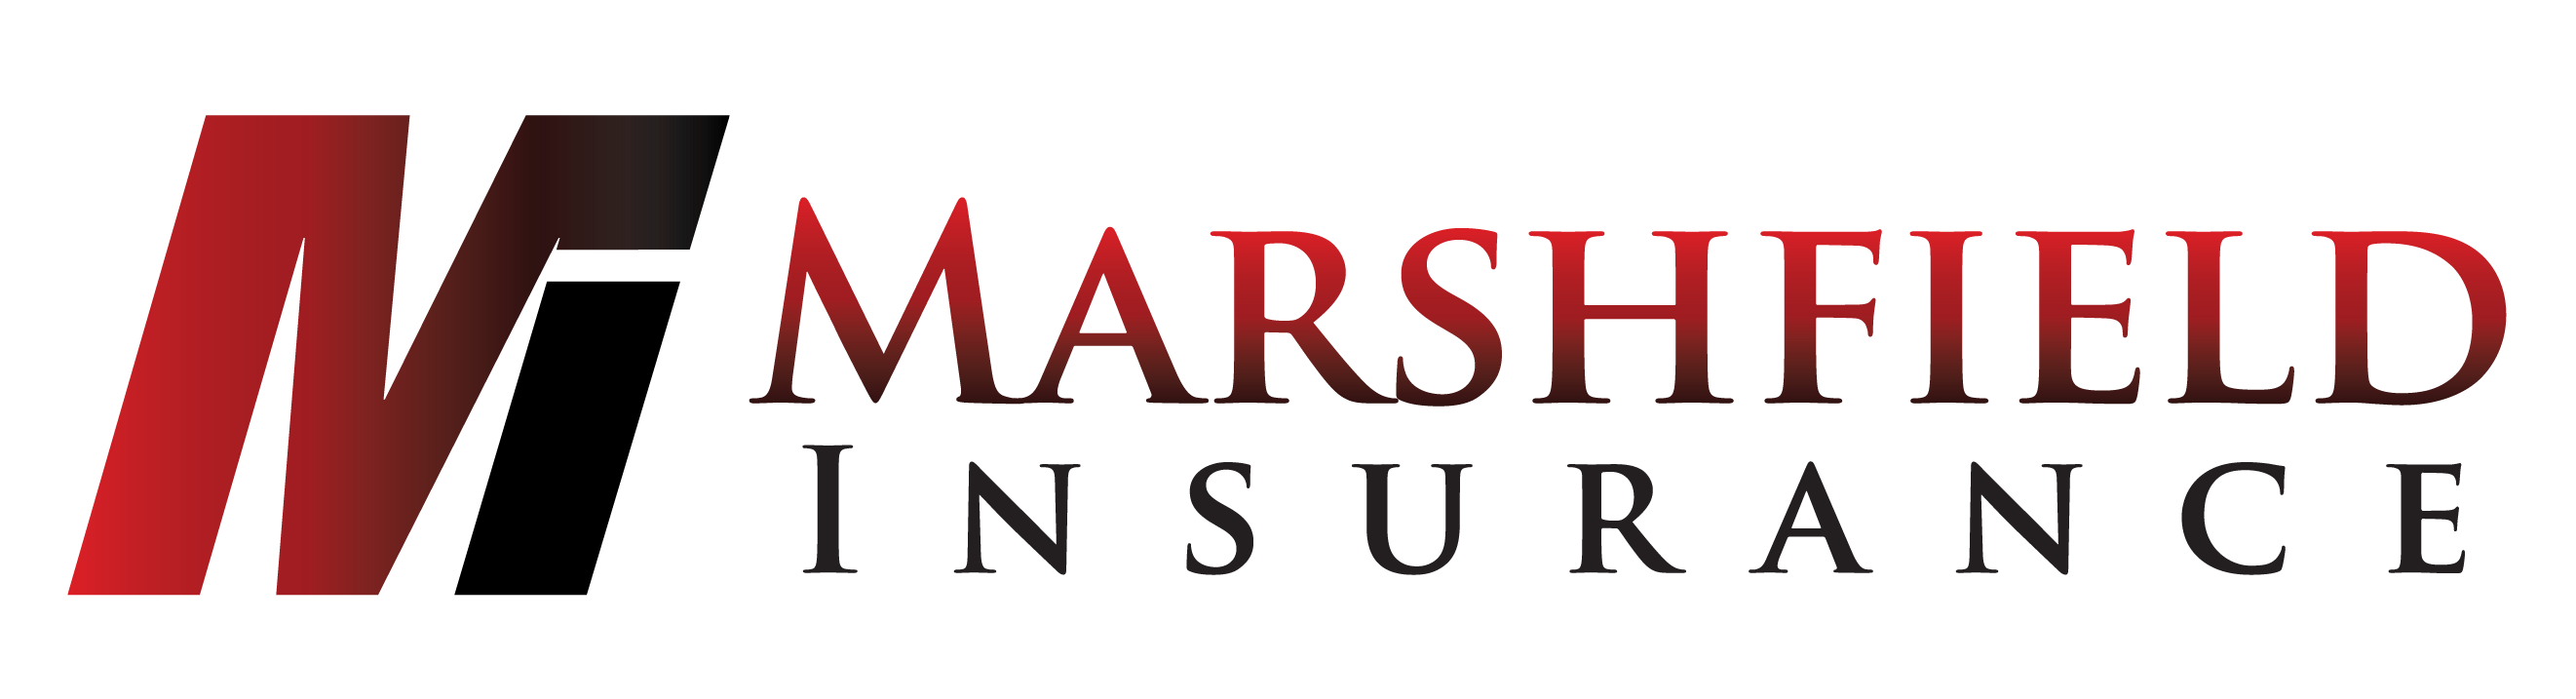 Marshfield Insurance Agency